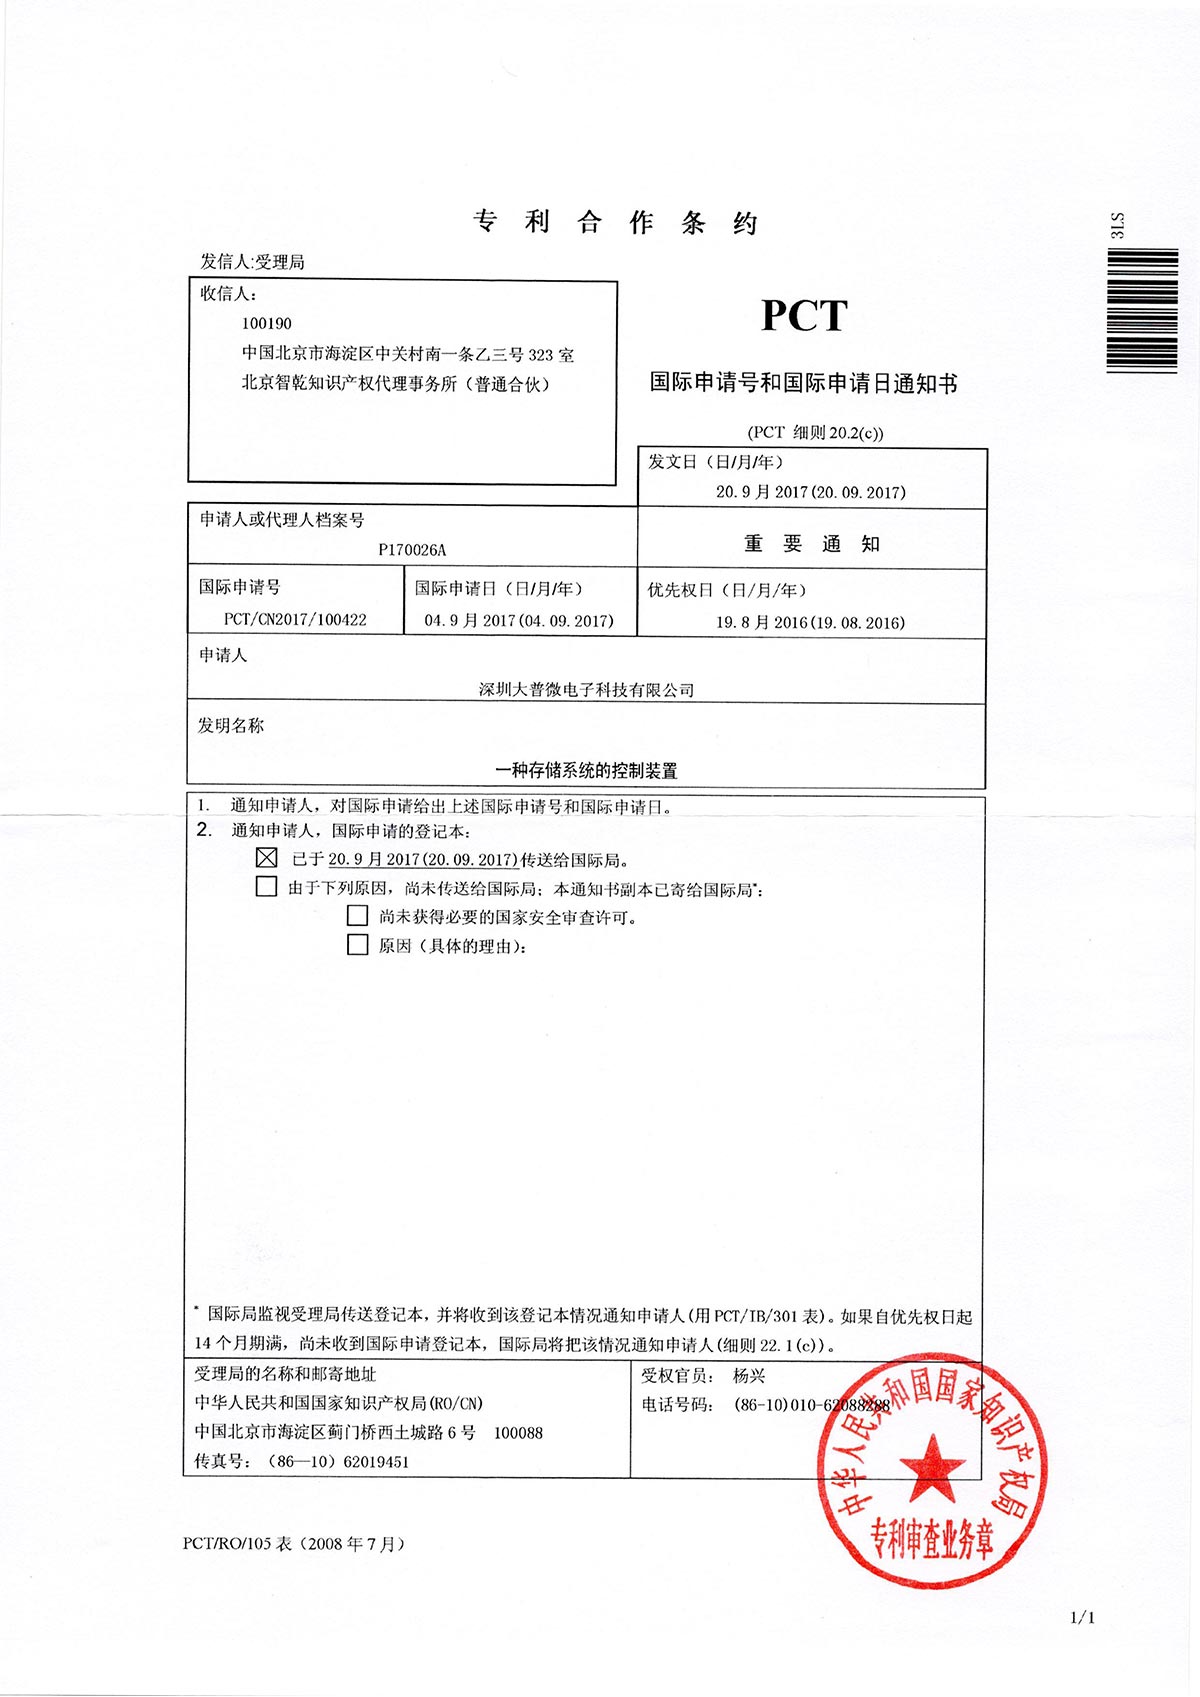 DPCT1-17004 105表 国际申请号和国际申请日通知书